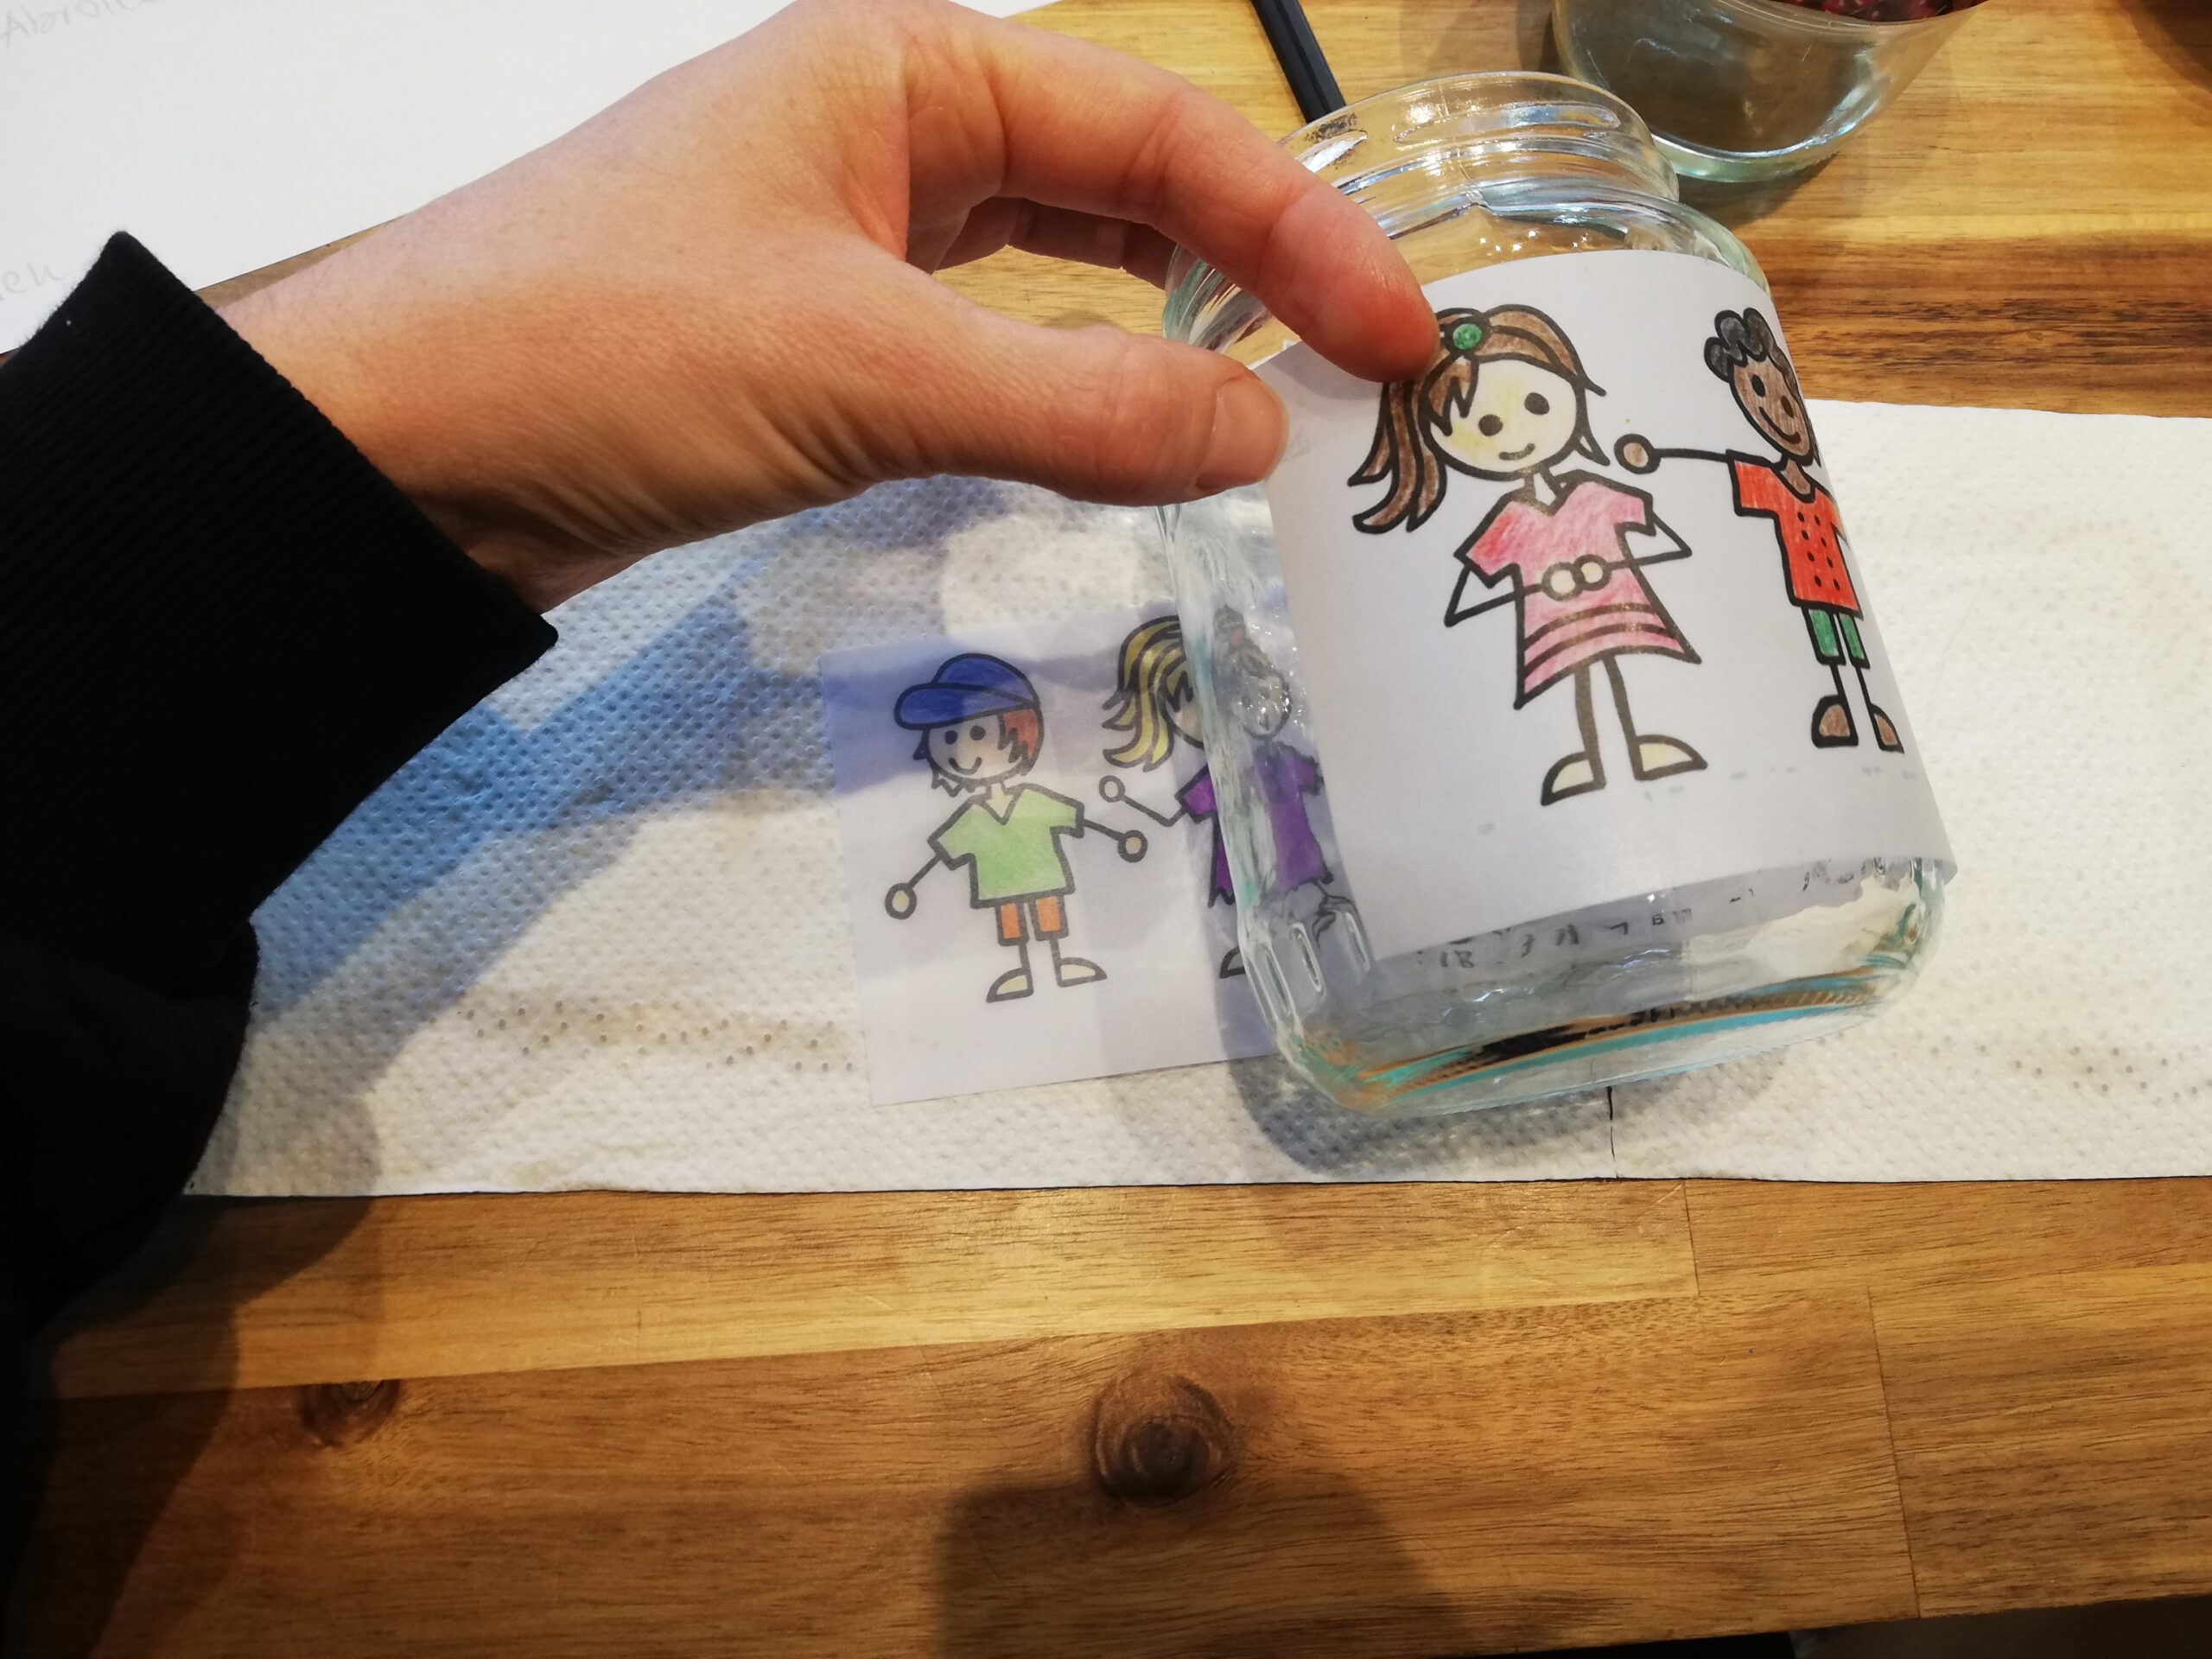 Bild zum Schritt 12 für das Bastel- und DIY-Abenteuer für Kinder: '[Eltern]Jetzt legt ihr die Banderole um das Glas und fixiert...'